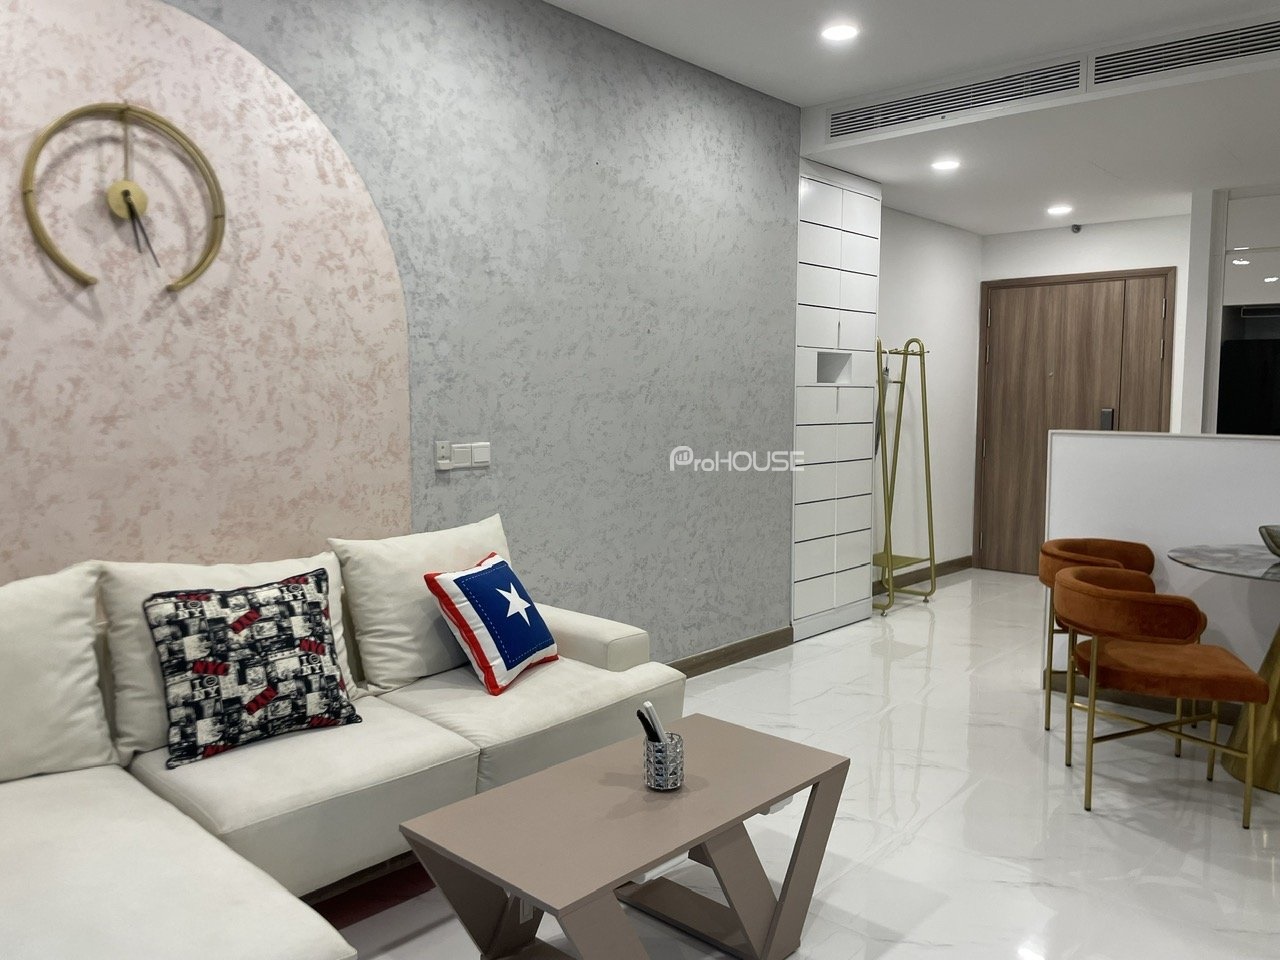 Căn hộ tầng cao view thành phố cho thuê tại Sunwah Pearl với đầy đủ nội thất